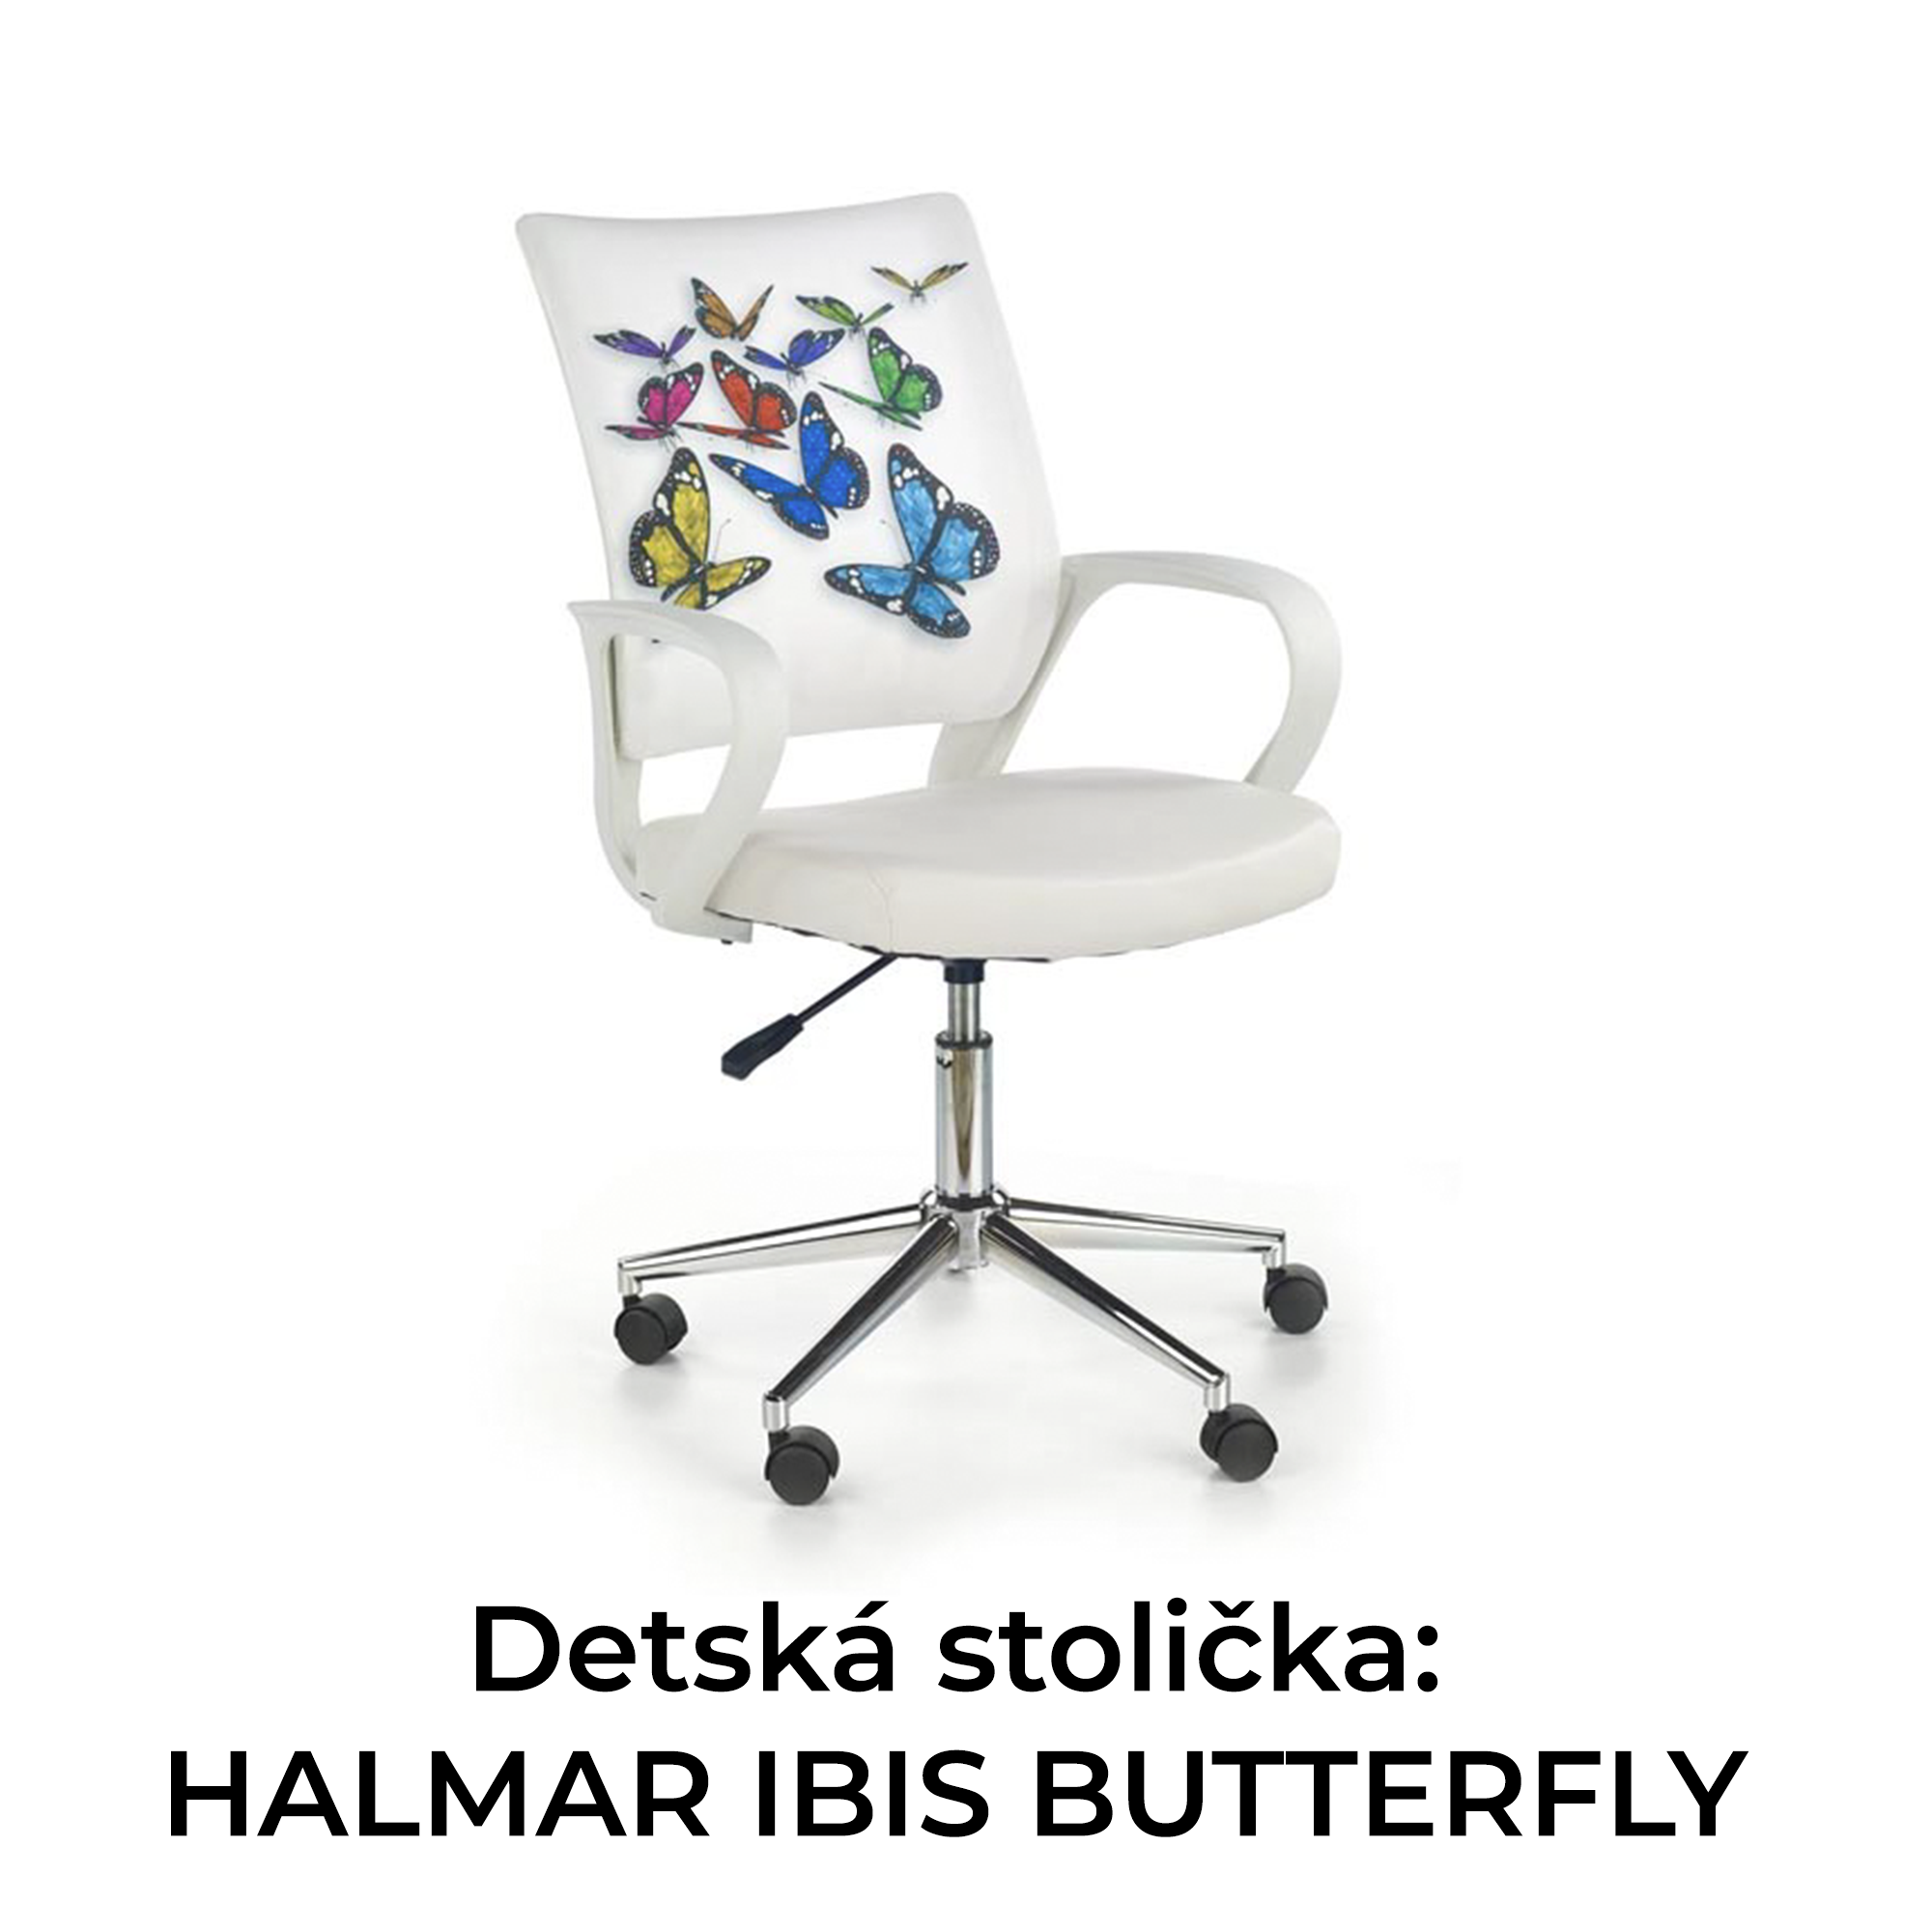 Detská stolička: HALMAR IBIS BUTTERFLY